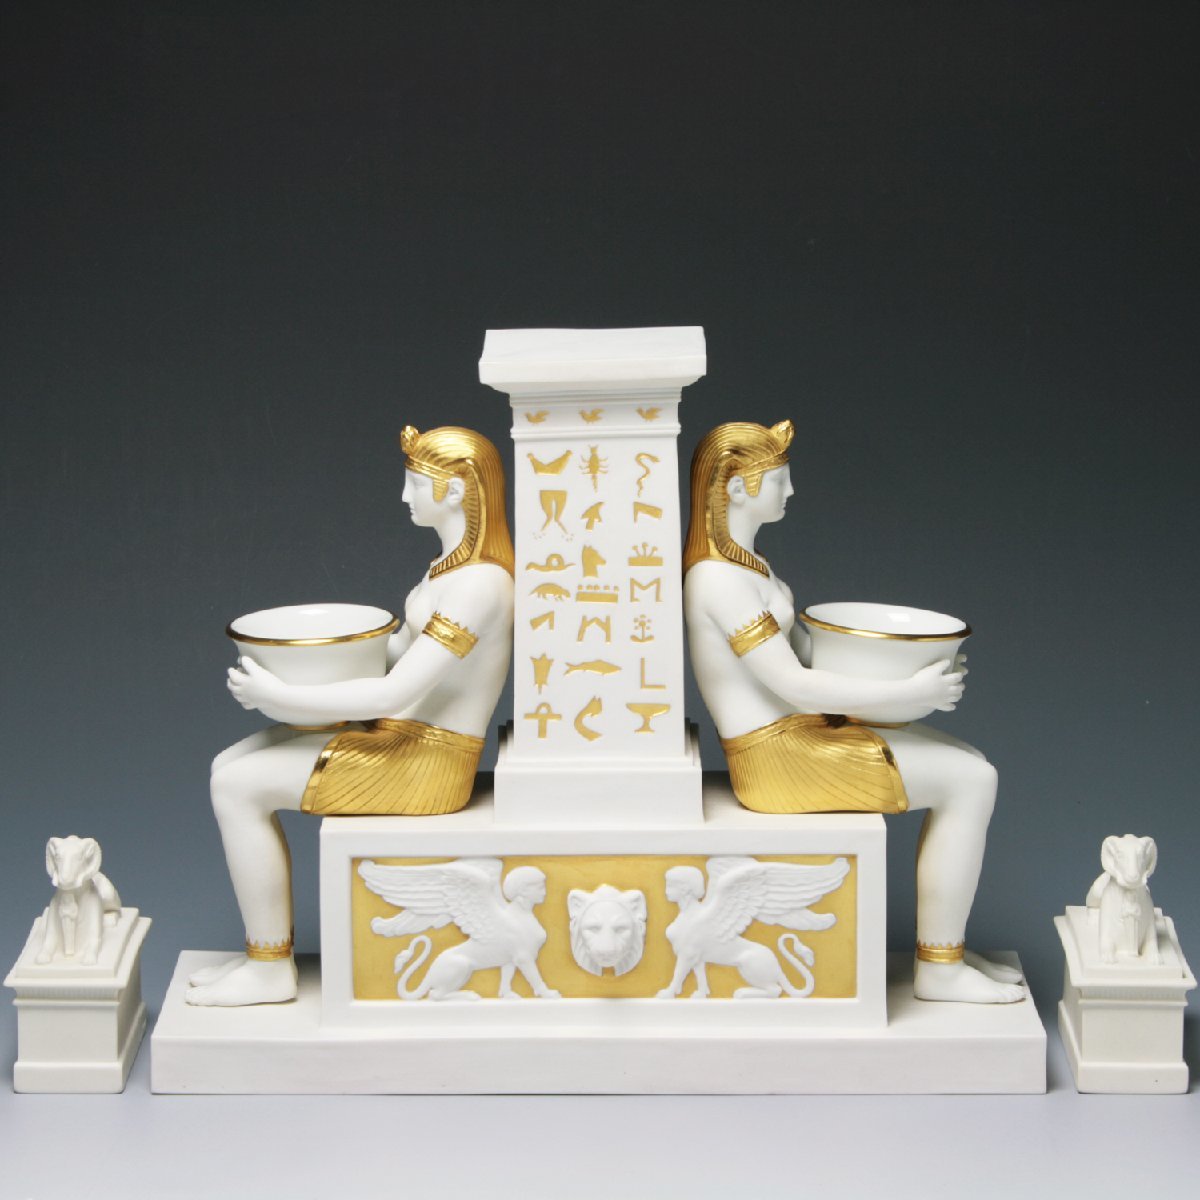 セーブル(Sevres) 人形 白磁金彩 古代エジプトのインク壺 1997年復刻 ハンドメイド ビスケット 置物 フランス製 新品